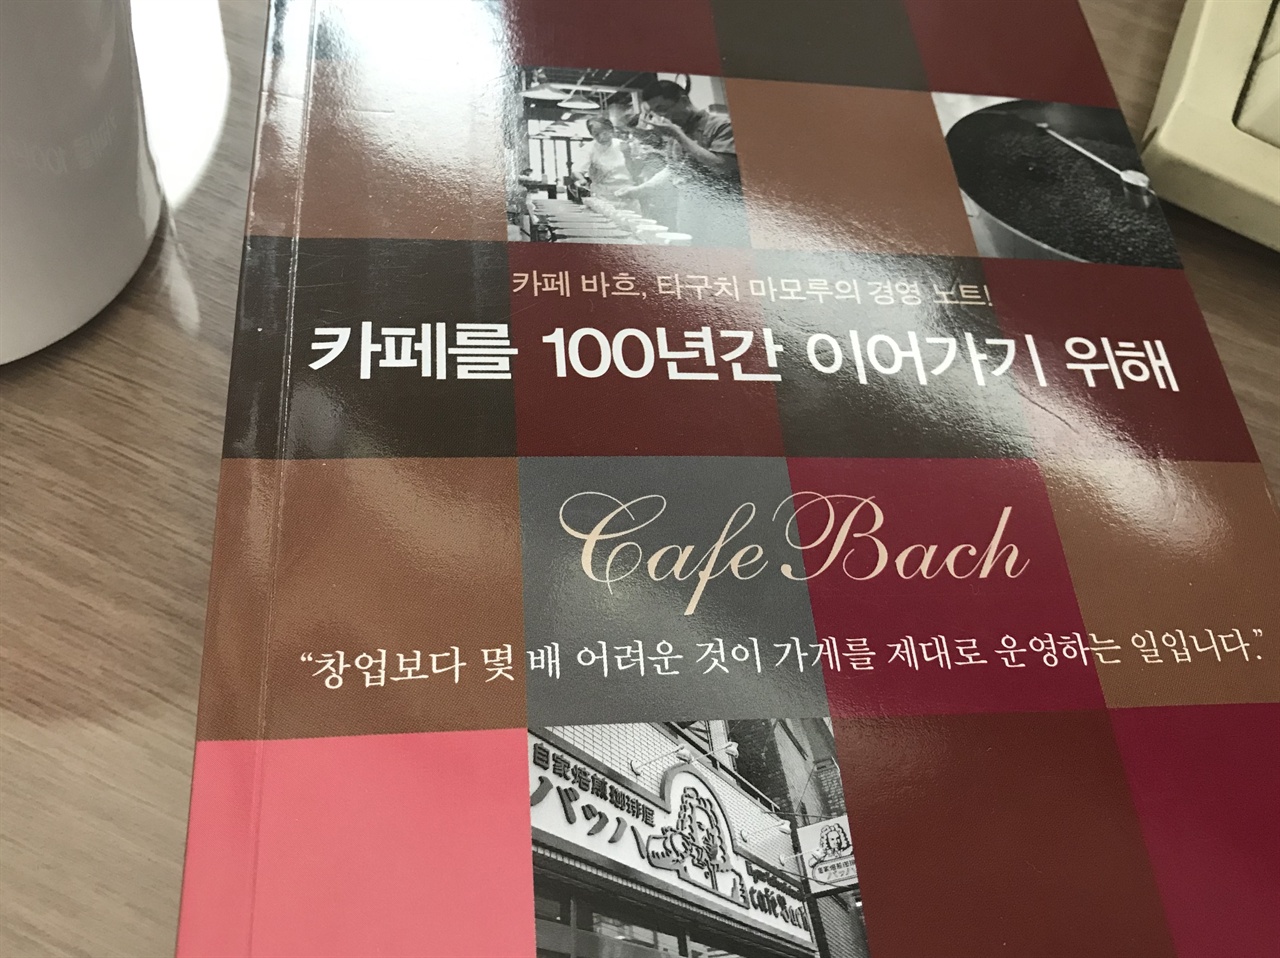  '카페 바흐'와 주인장 타구치 마모루를 만났다. 1968년부터 카페 사업을 해 온 그의 저서는 <카페를 100년간 이어가기 위해>였다. 그 책을 읽는 동안 카페 경영자로서의 자격이 없다는 자책을 수도 없이 했다.